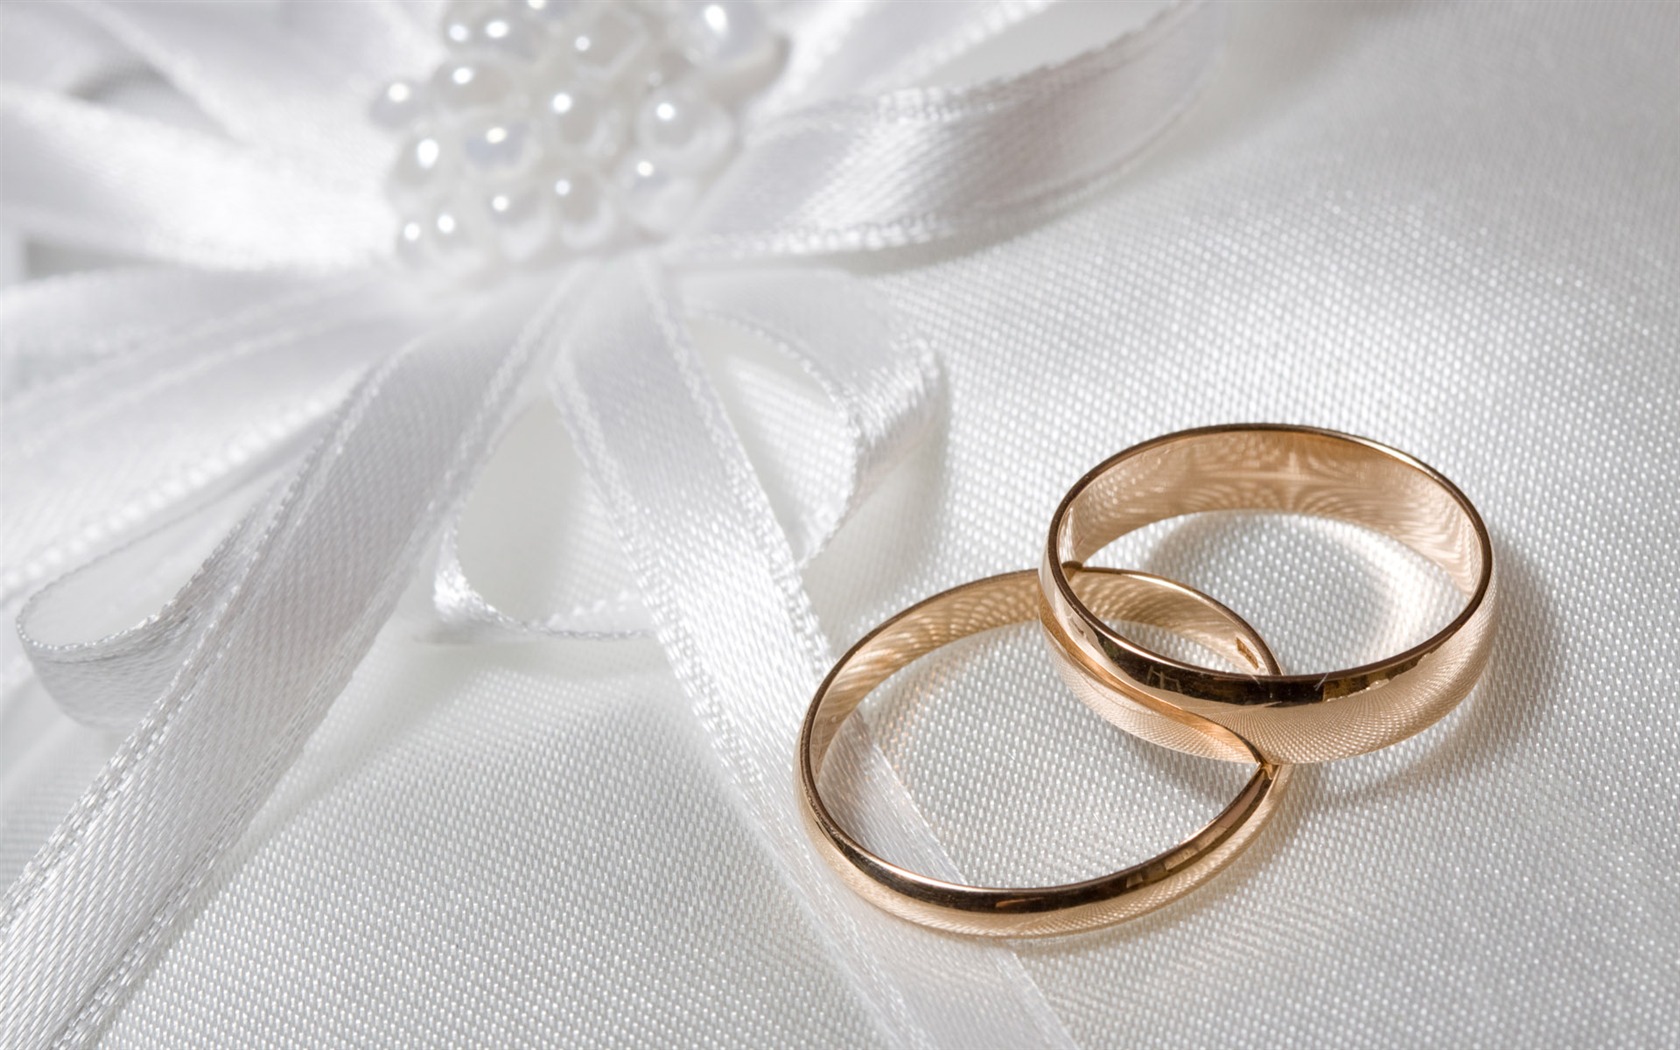 Mariage et papier peint anneau de mariage (2) #14 - 1680x1050